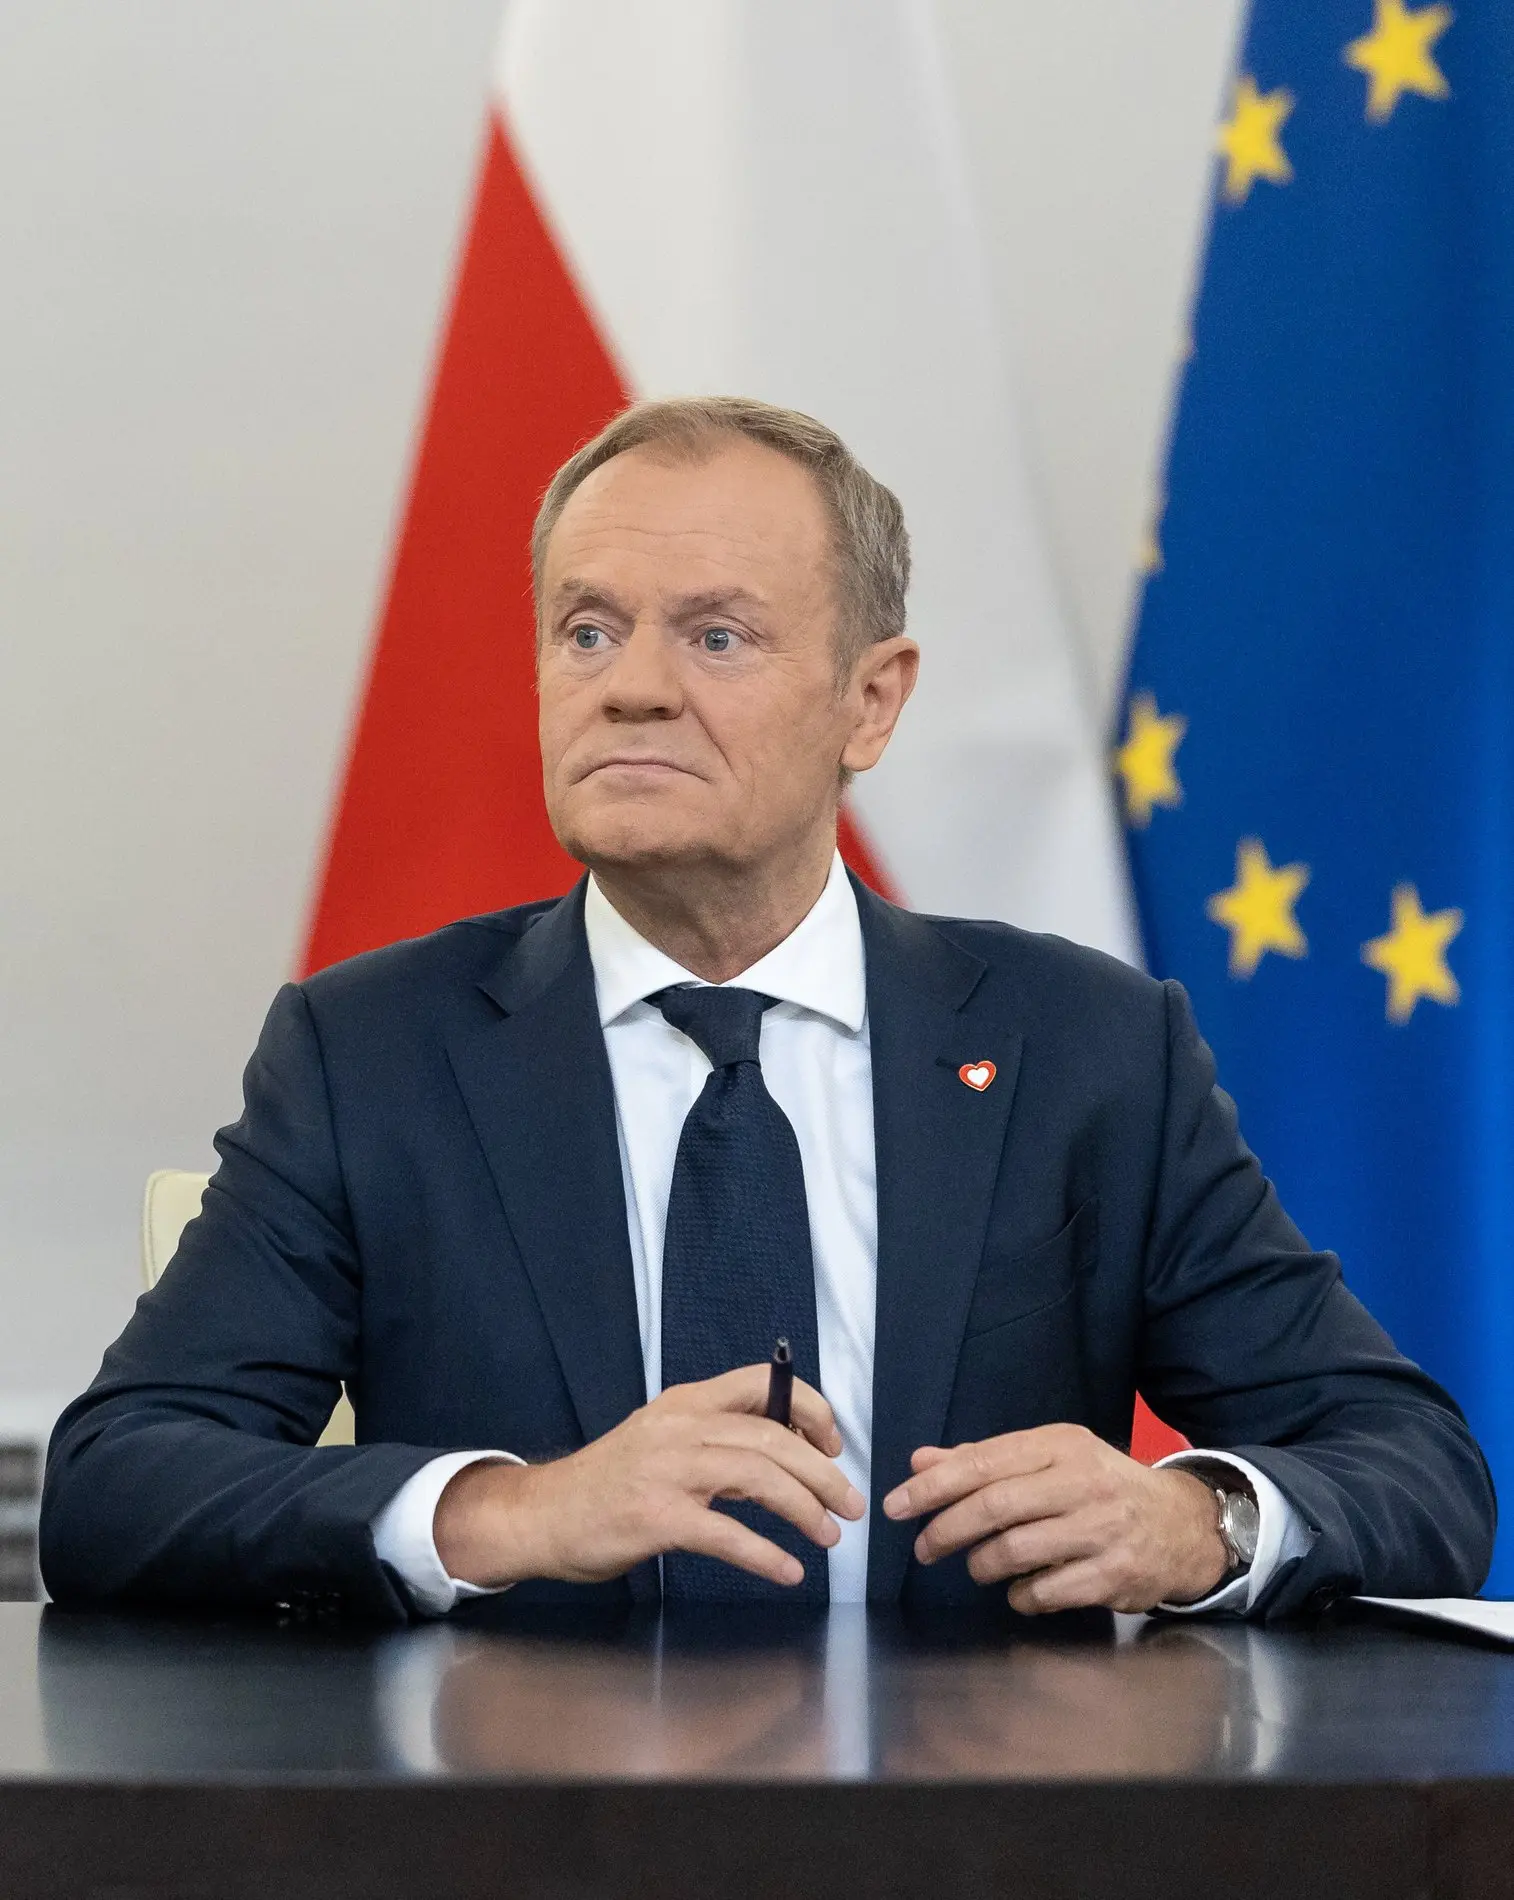 Dolald Tusk sitzt vor europäischer und polnischer Fahne